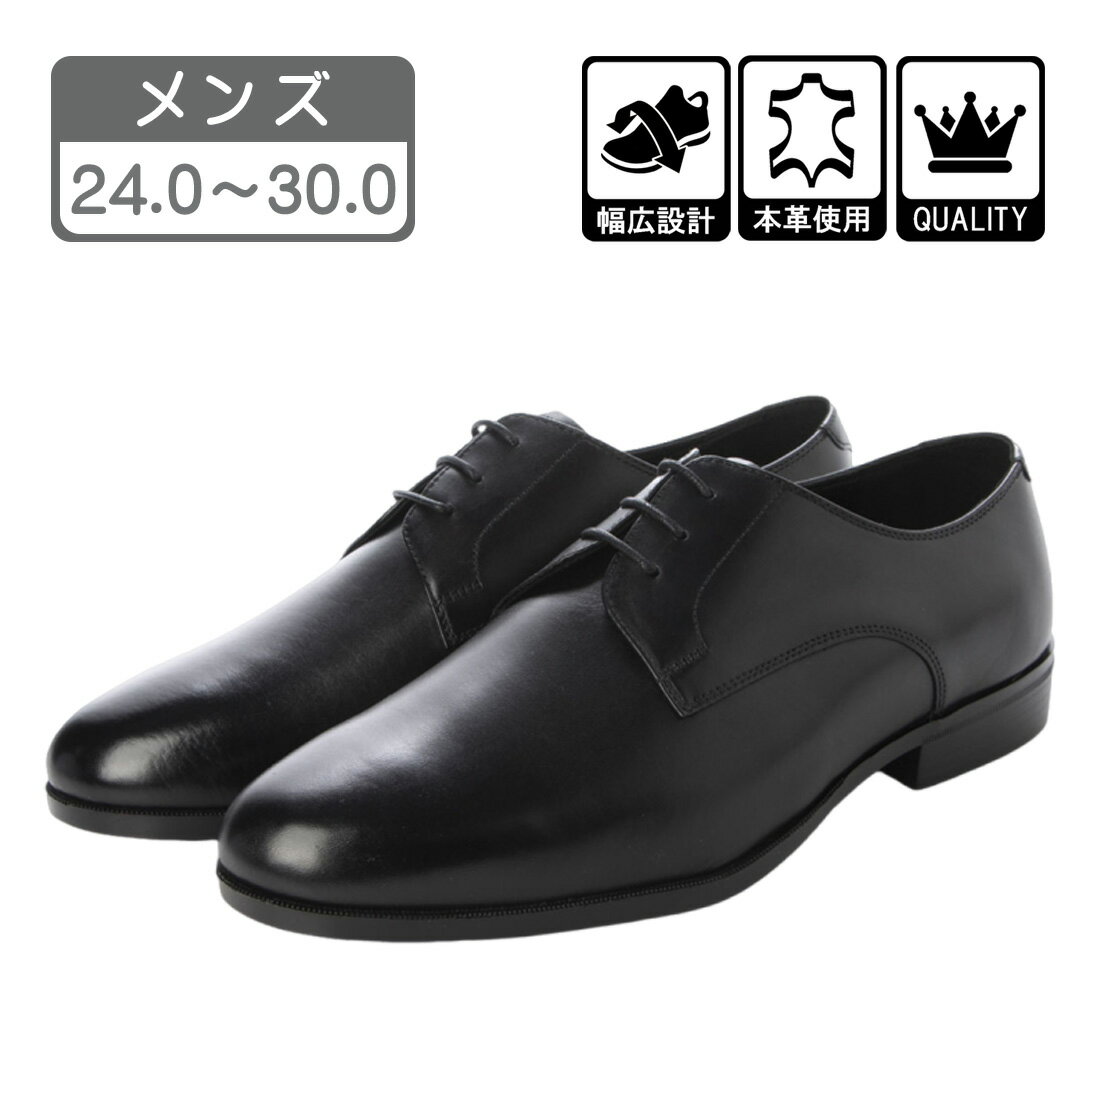 メンズ 本革 ビジネスシューズ ドレスシューズ プレーントゥ 外羽根 革靴 紳士靴 黒 ブラック 24.0cm - 30.0cm CL310